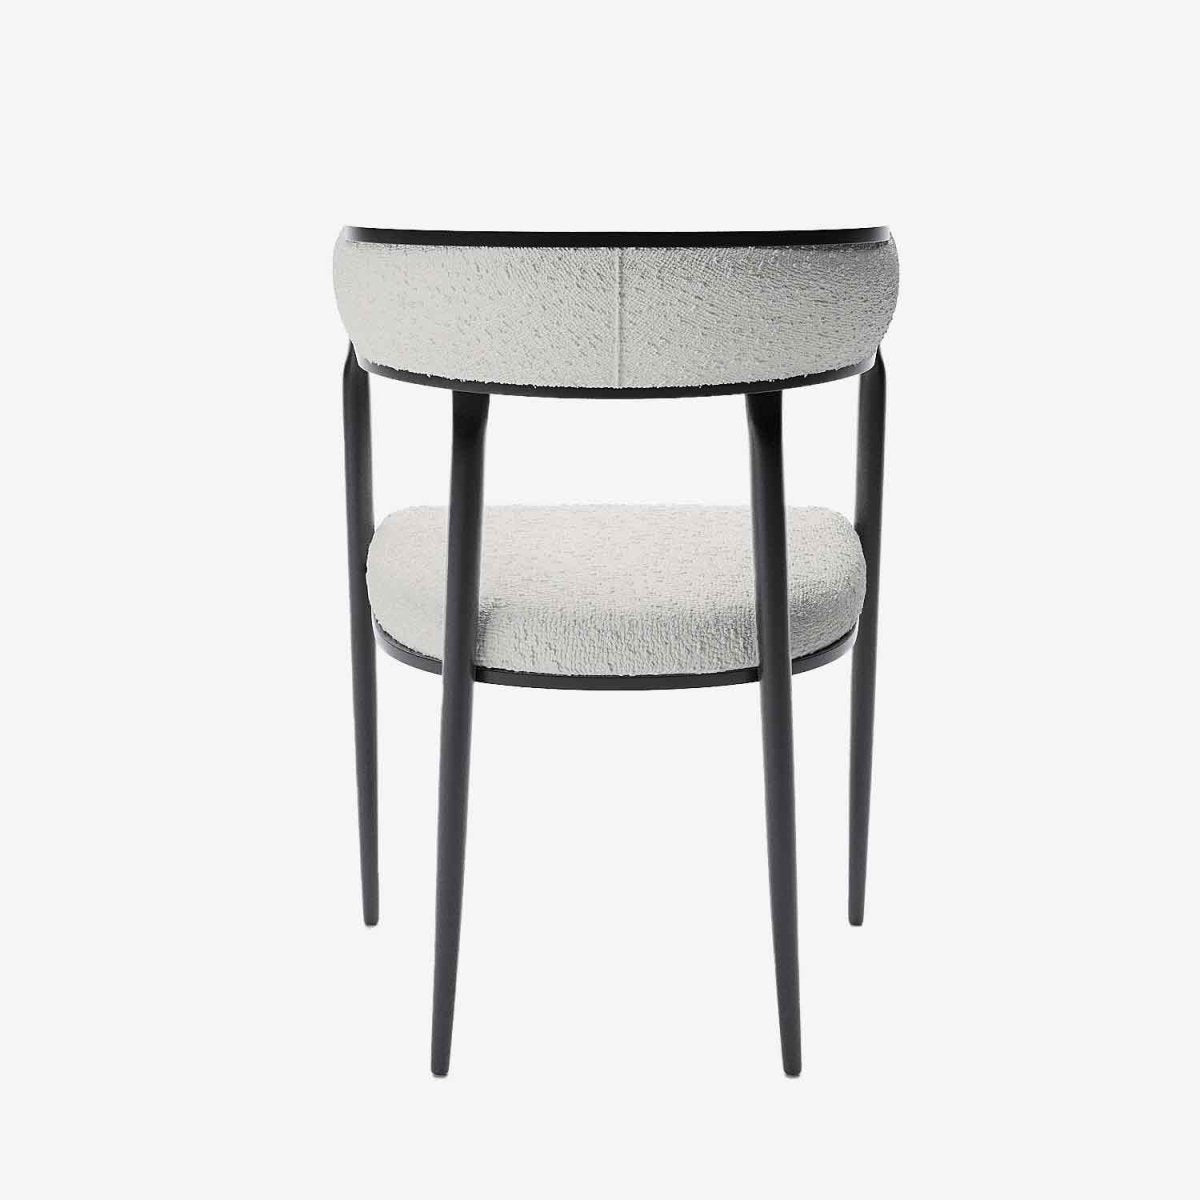 Chaise  design contemporain dossier arrondi bouclette gris crème - Potiron Paris, la satisfaction des chaises de table design confortables au meilleur prix